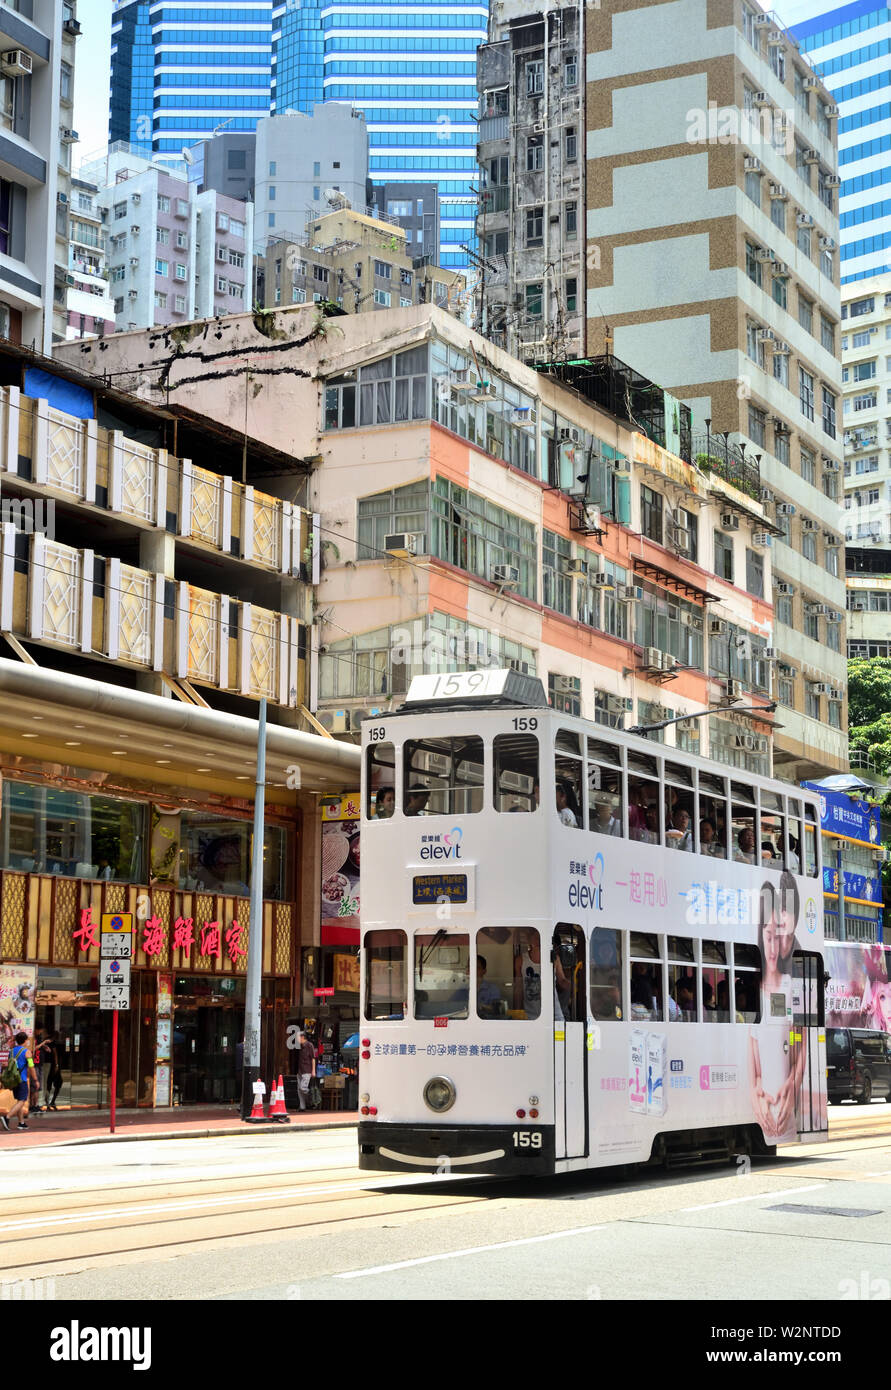 Le tram passe en cours d'exécution de bâtiments anciens, Hong Kong Banque D'Images